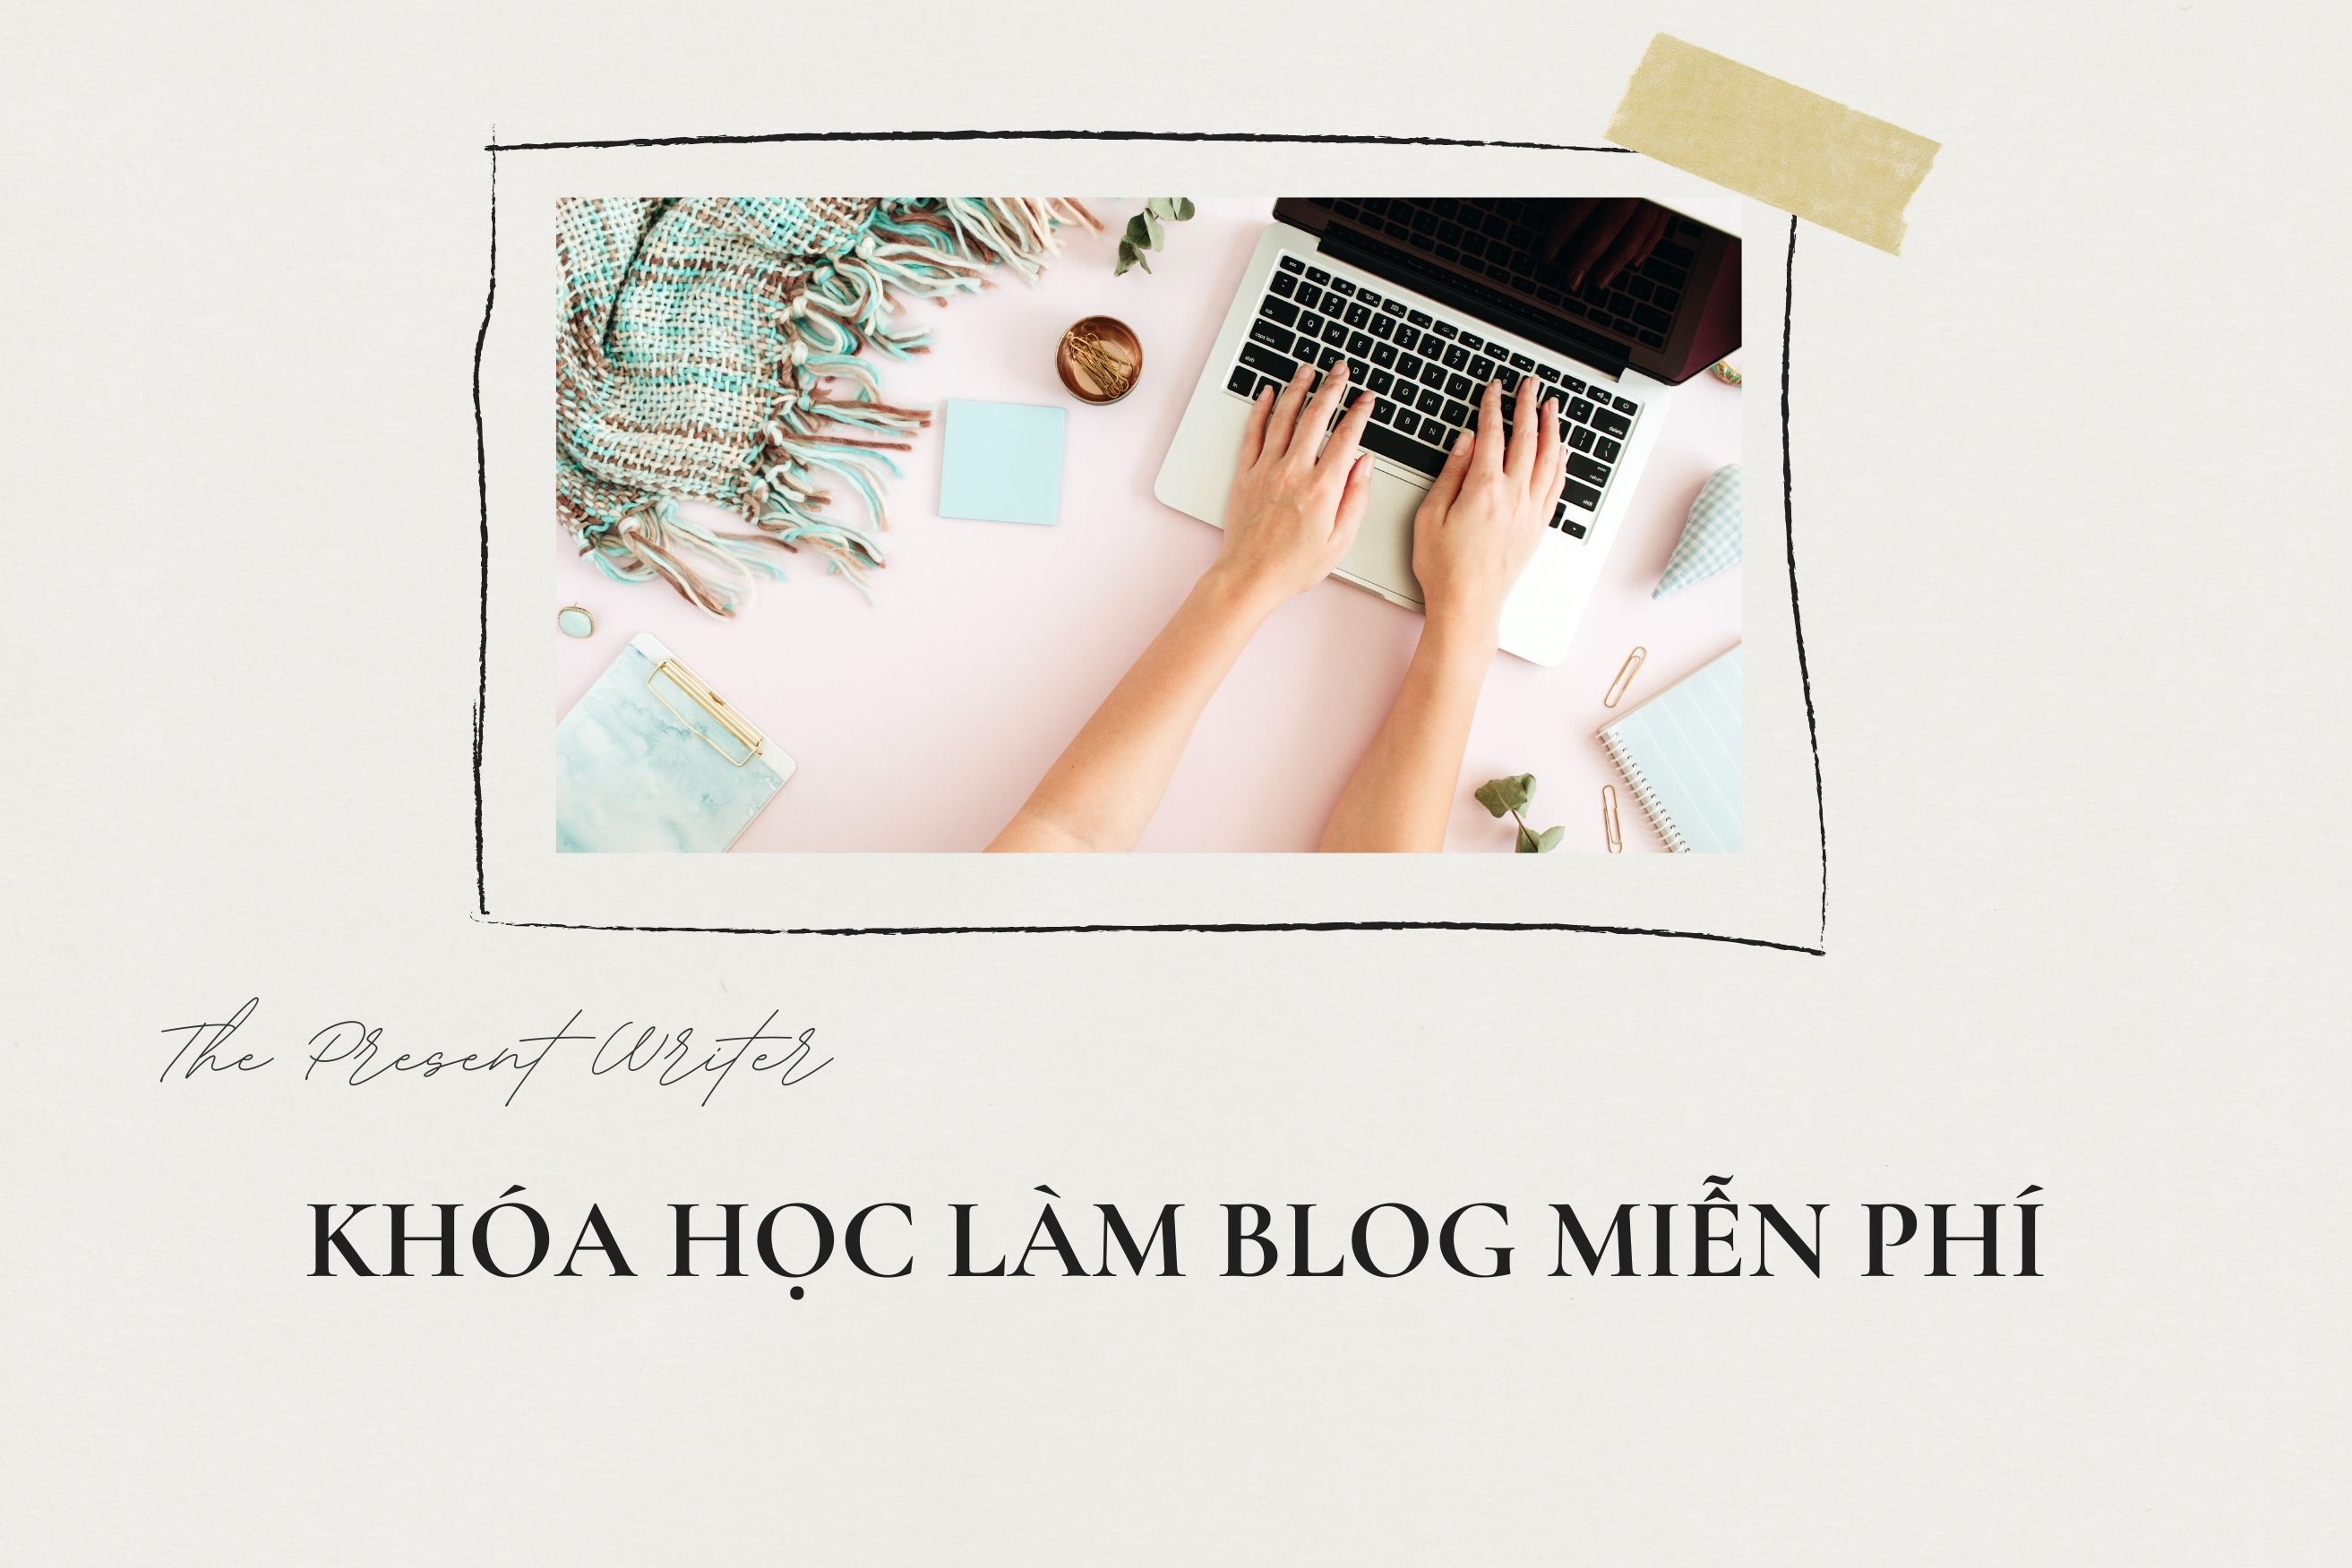 Ngày 4 Khóa học blog: Bắt đầu viết blog như thế nào? - The Present Writer